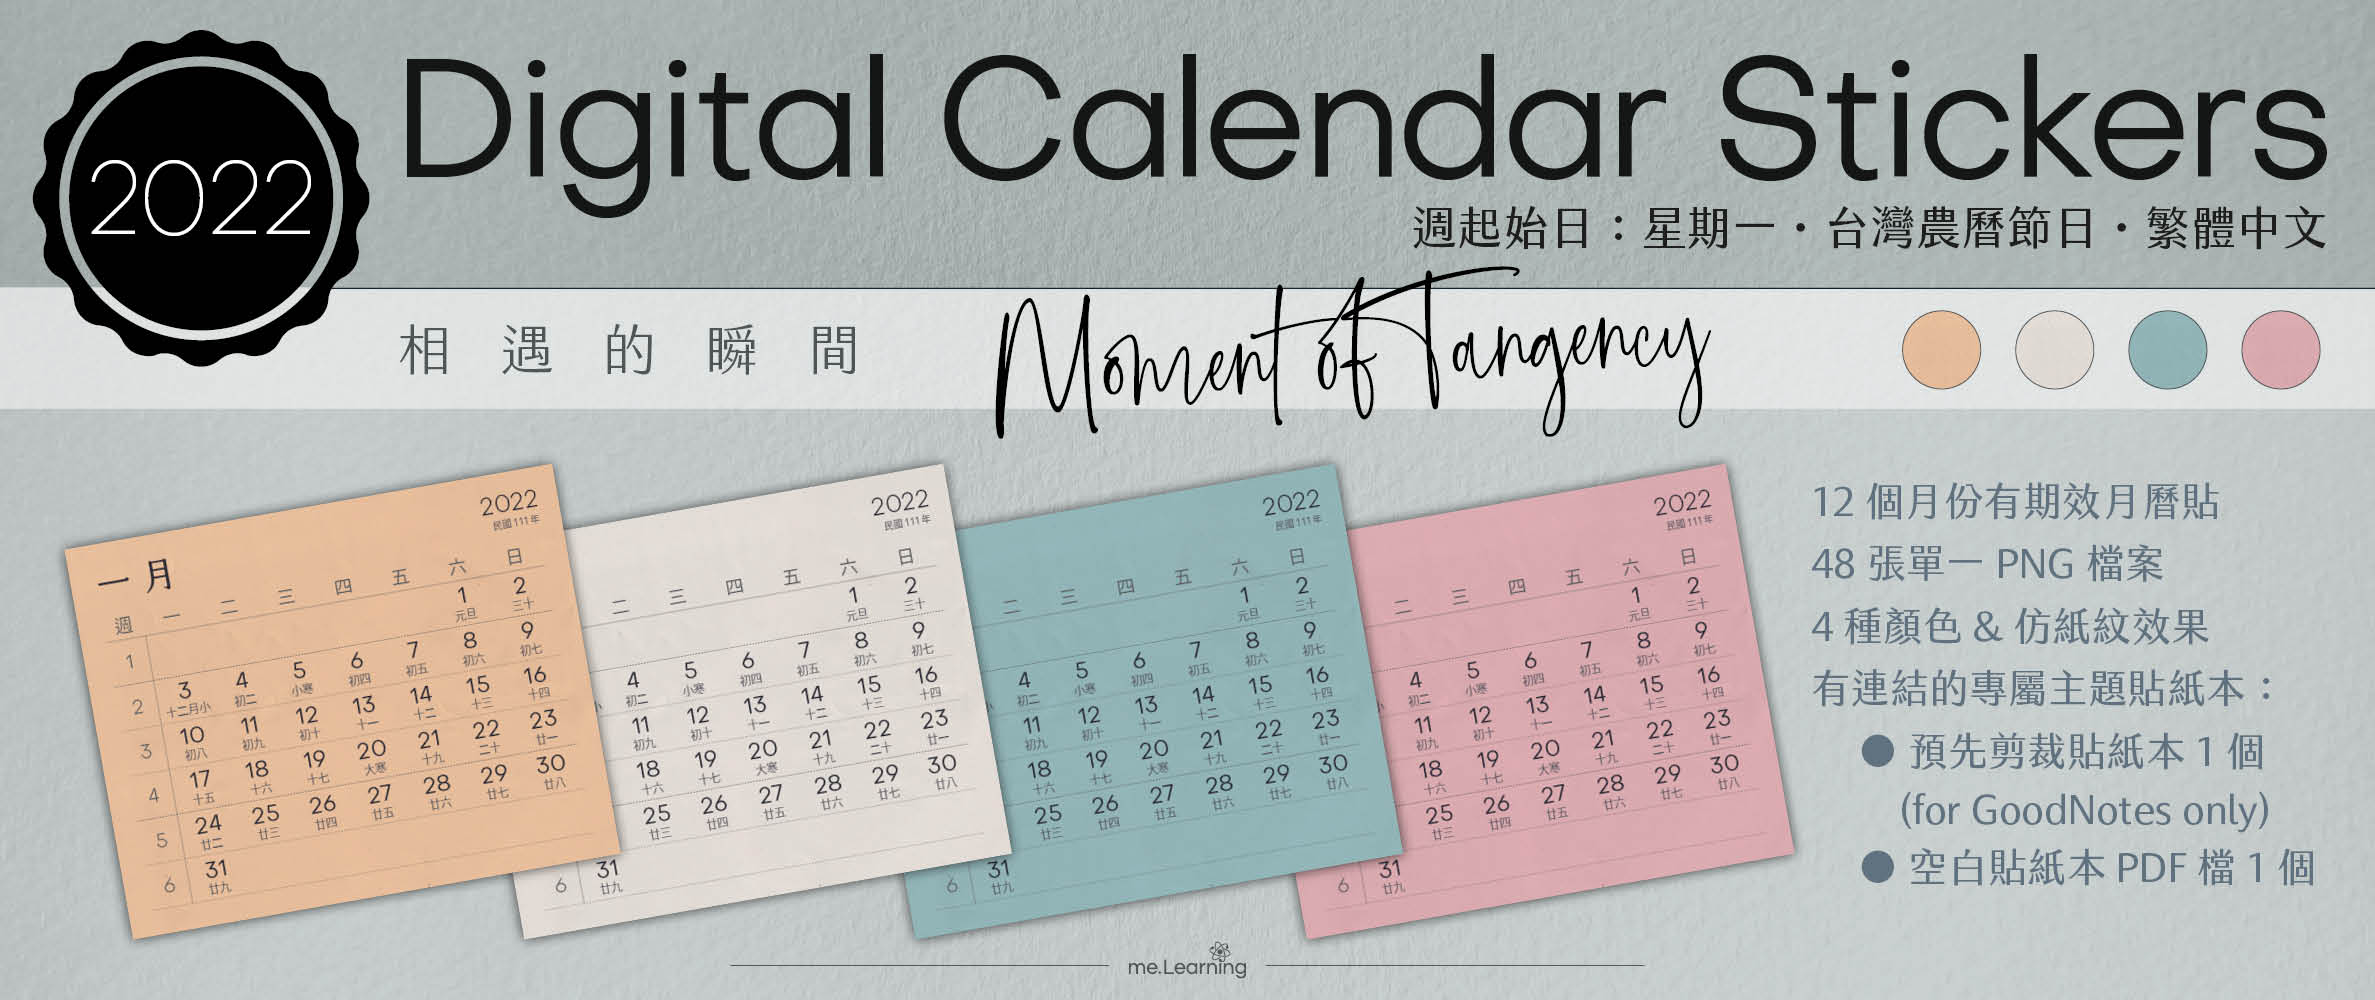 月曆貼-台灣繁中-2022年-相遇的瞬間-電子貼紙包Style001-農曆-Monday start-CD0001